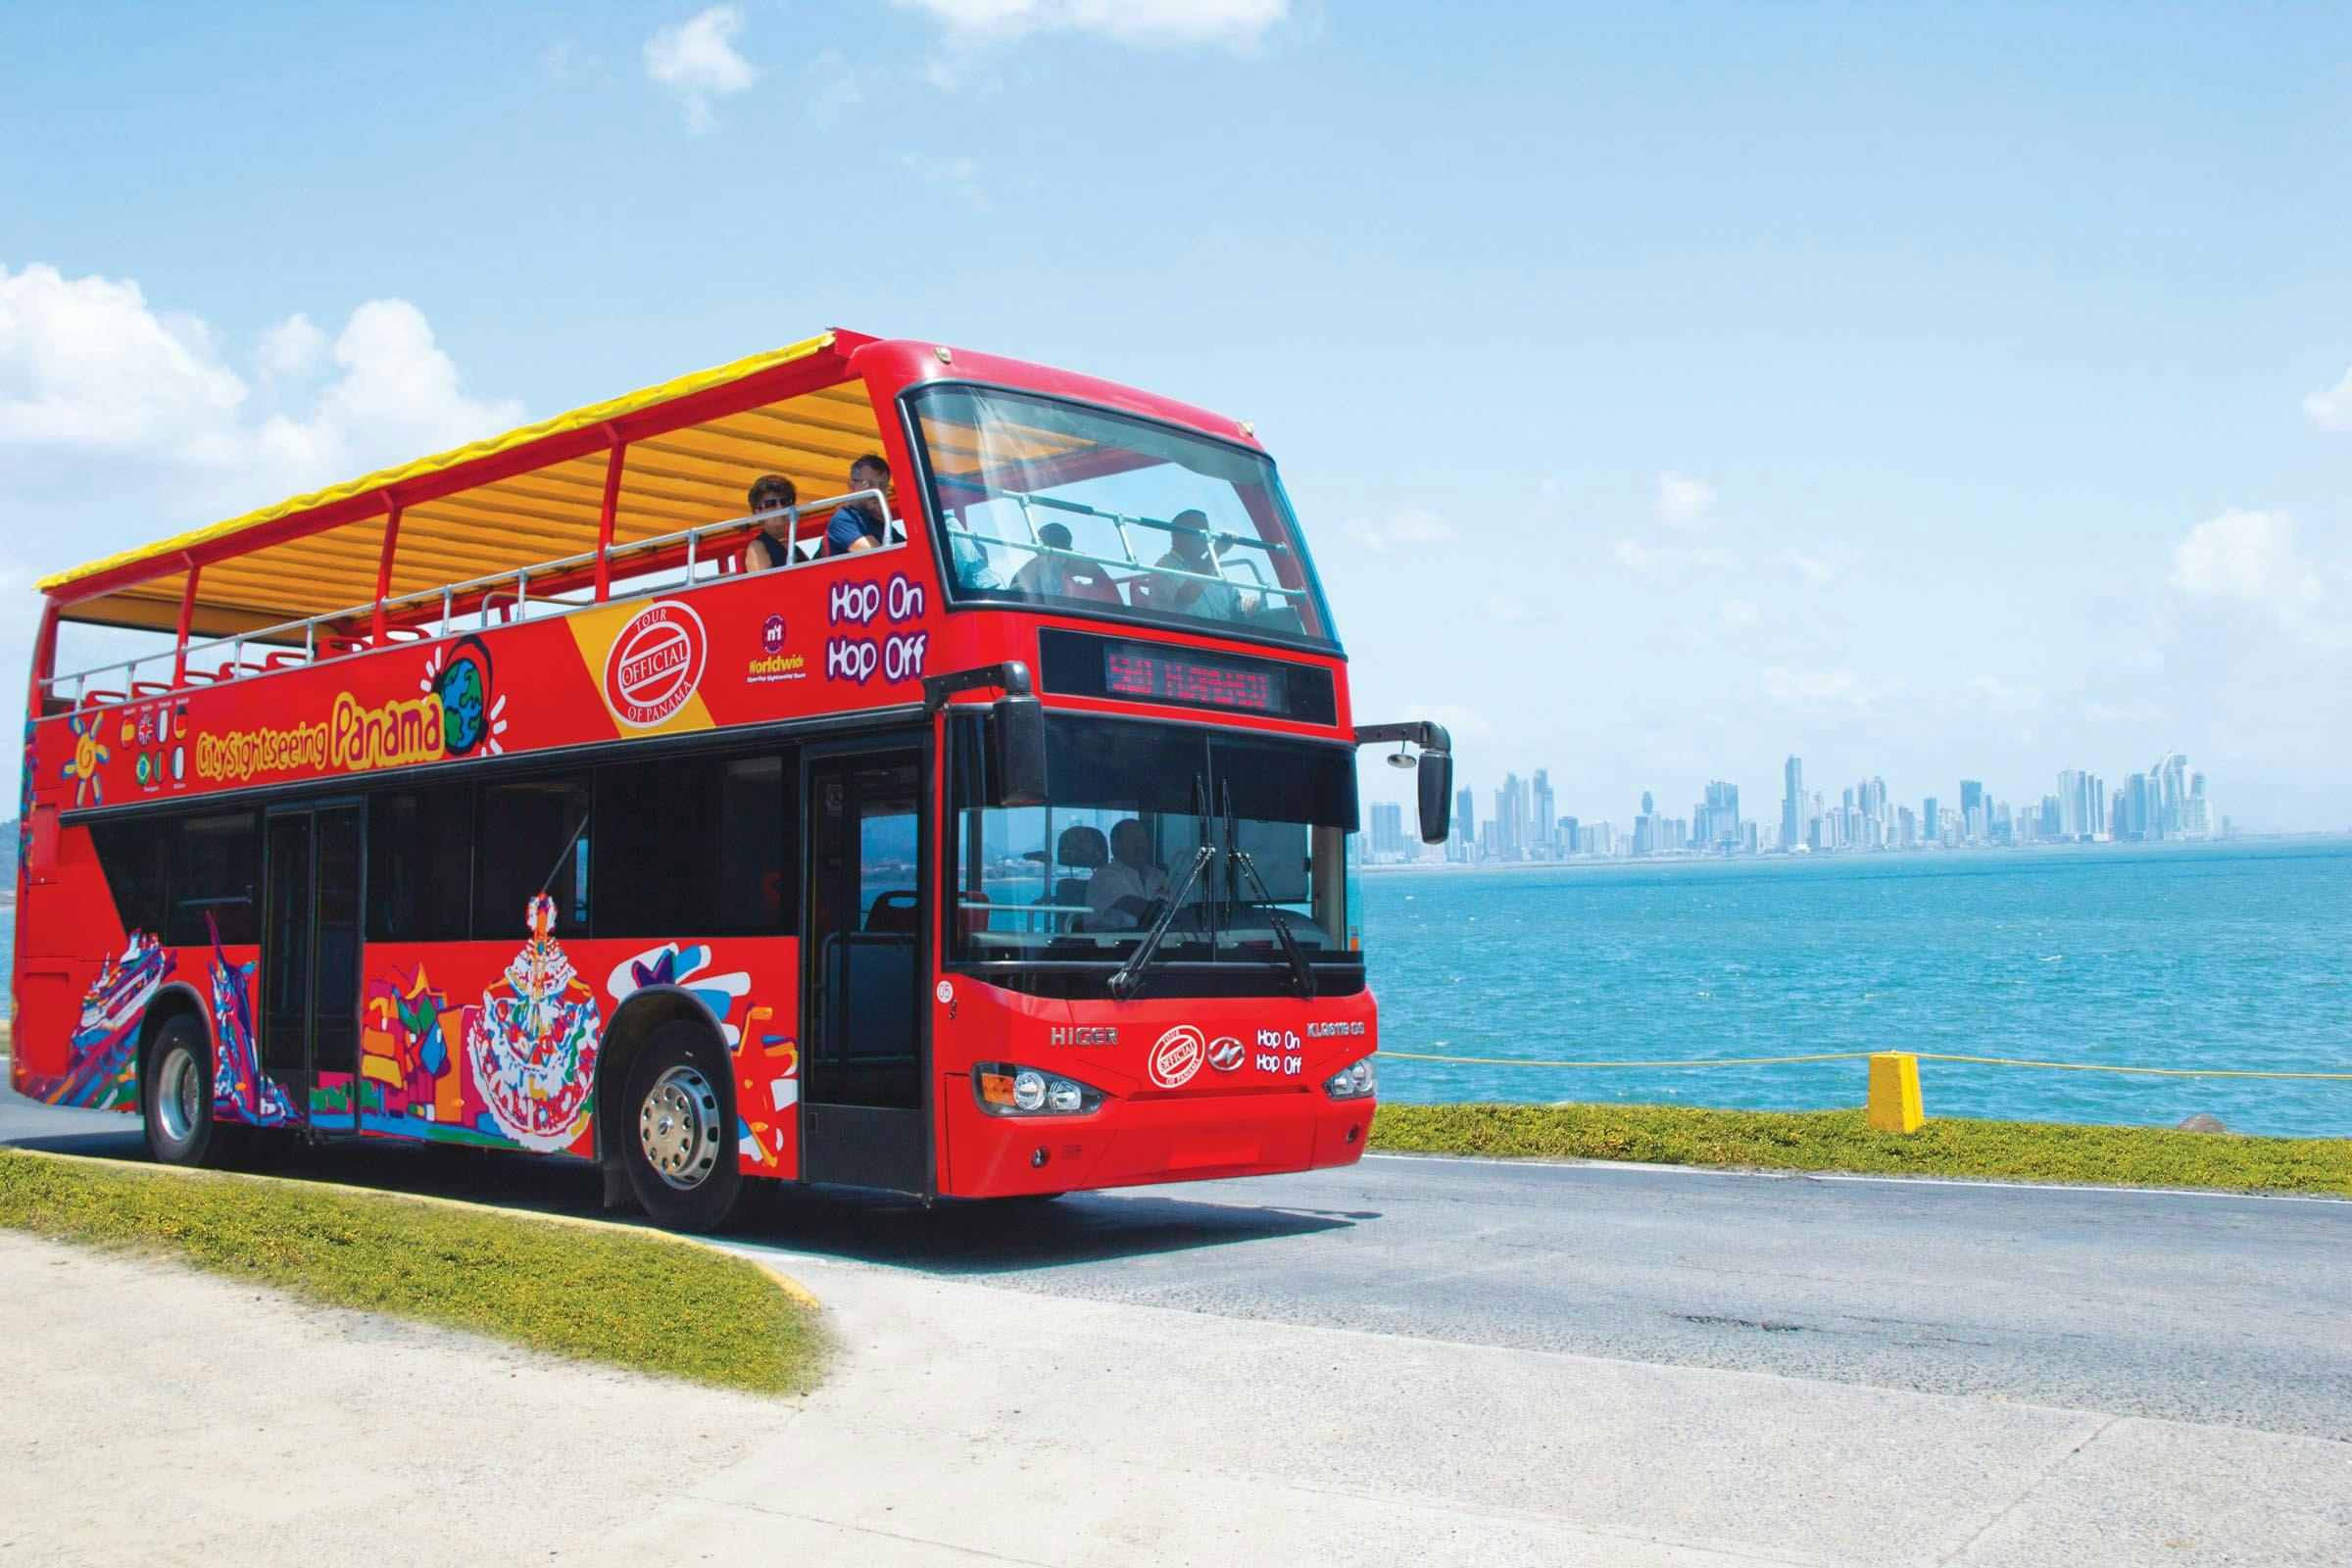 Hop-on hop-off bus tour of Panama City